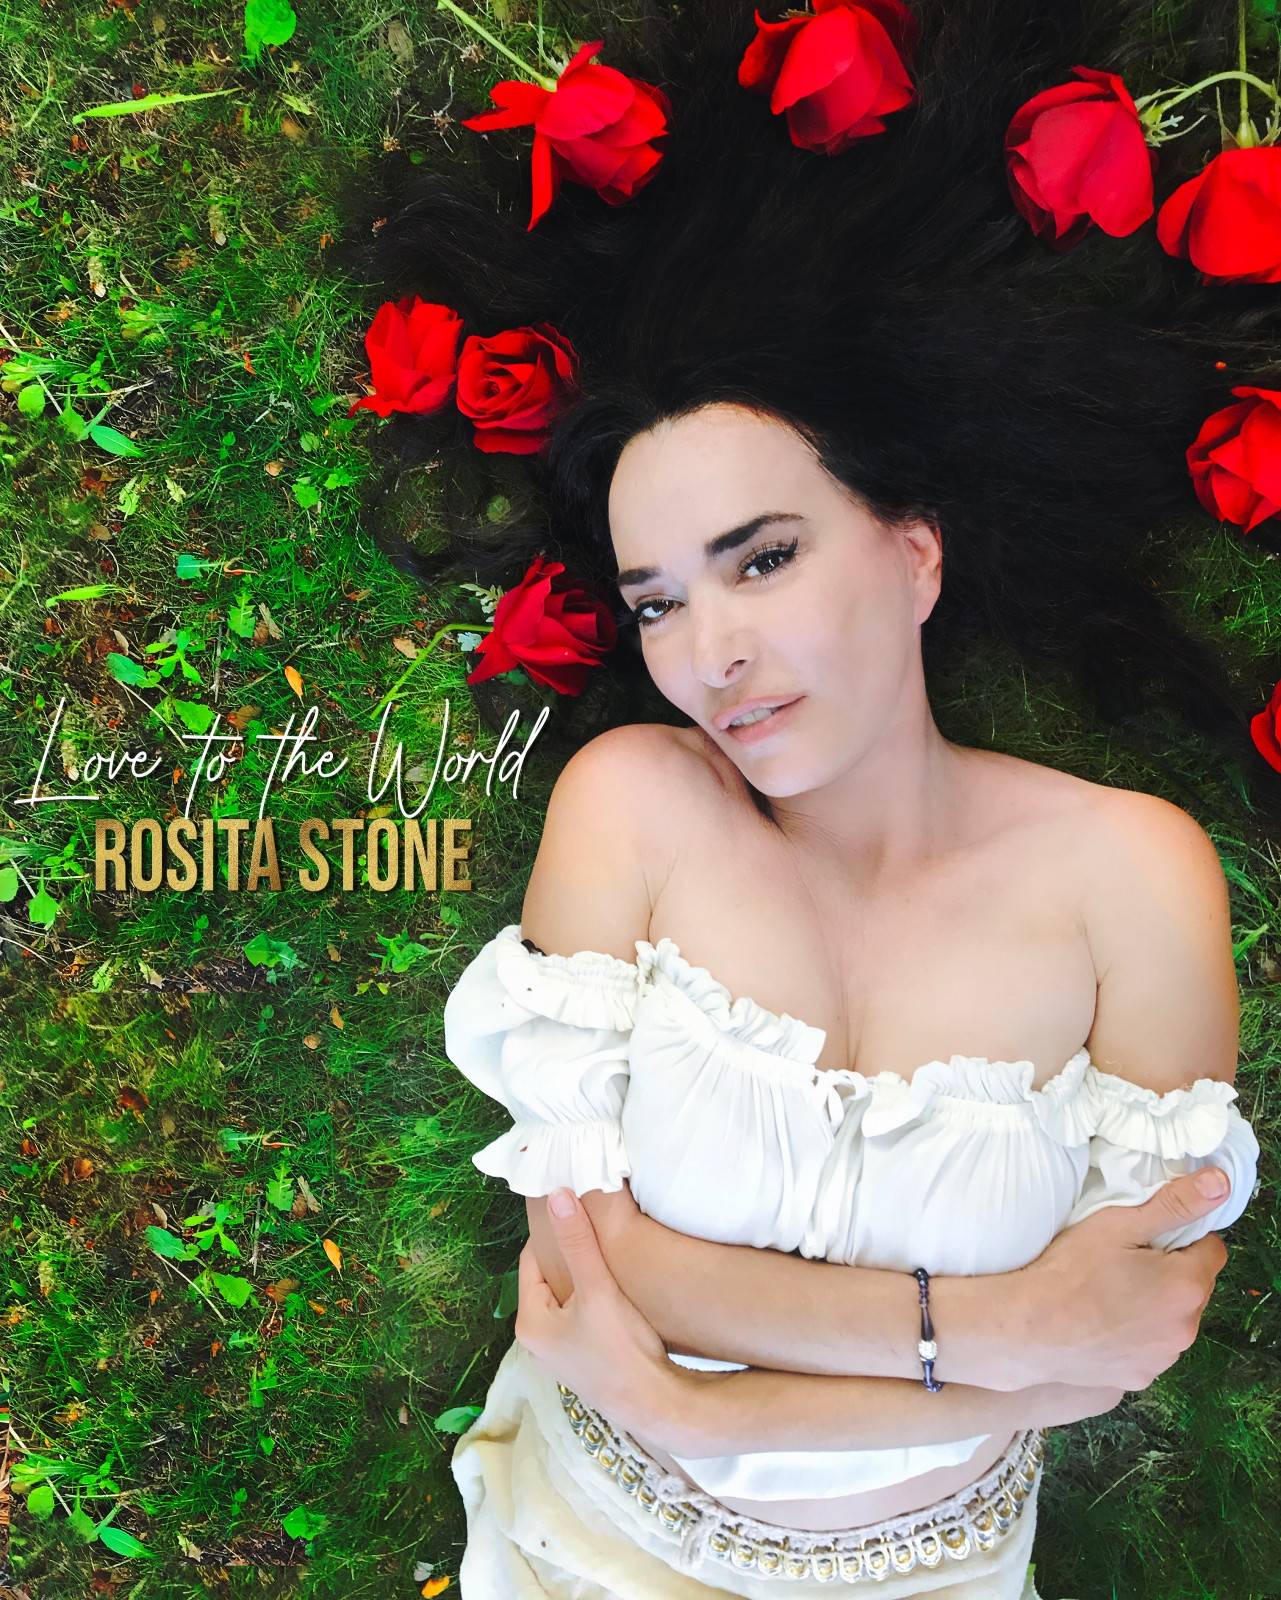 Rosita Stone